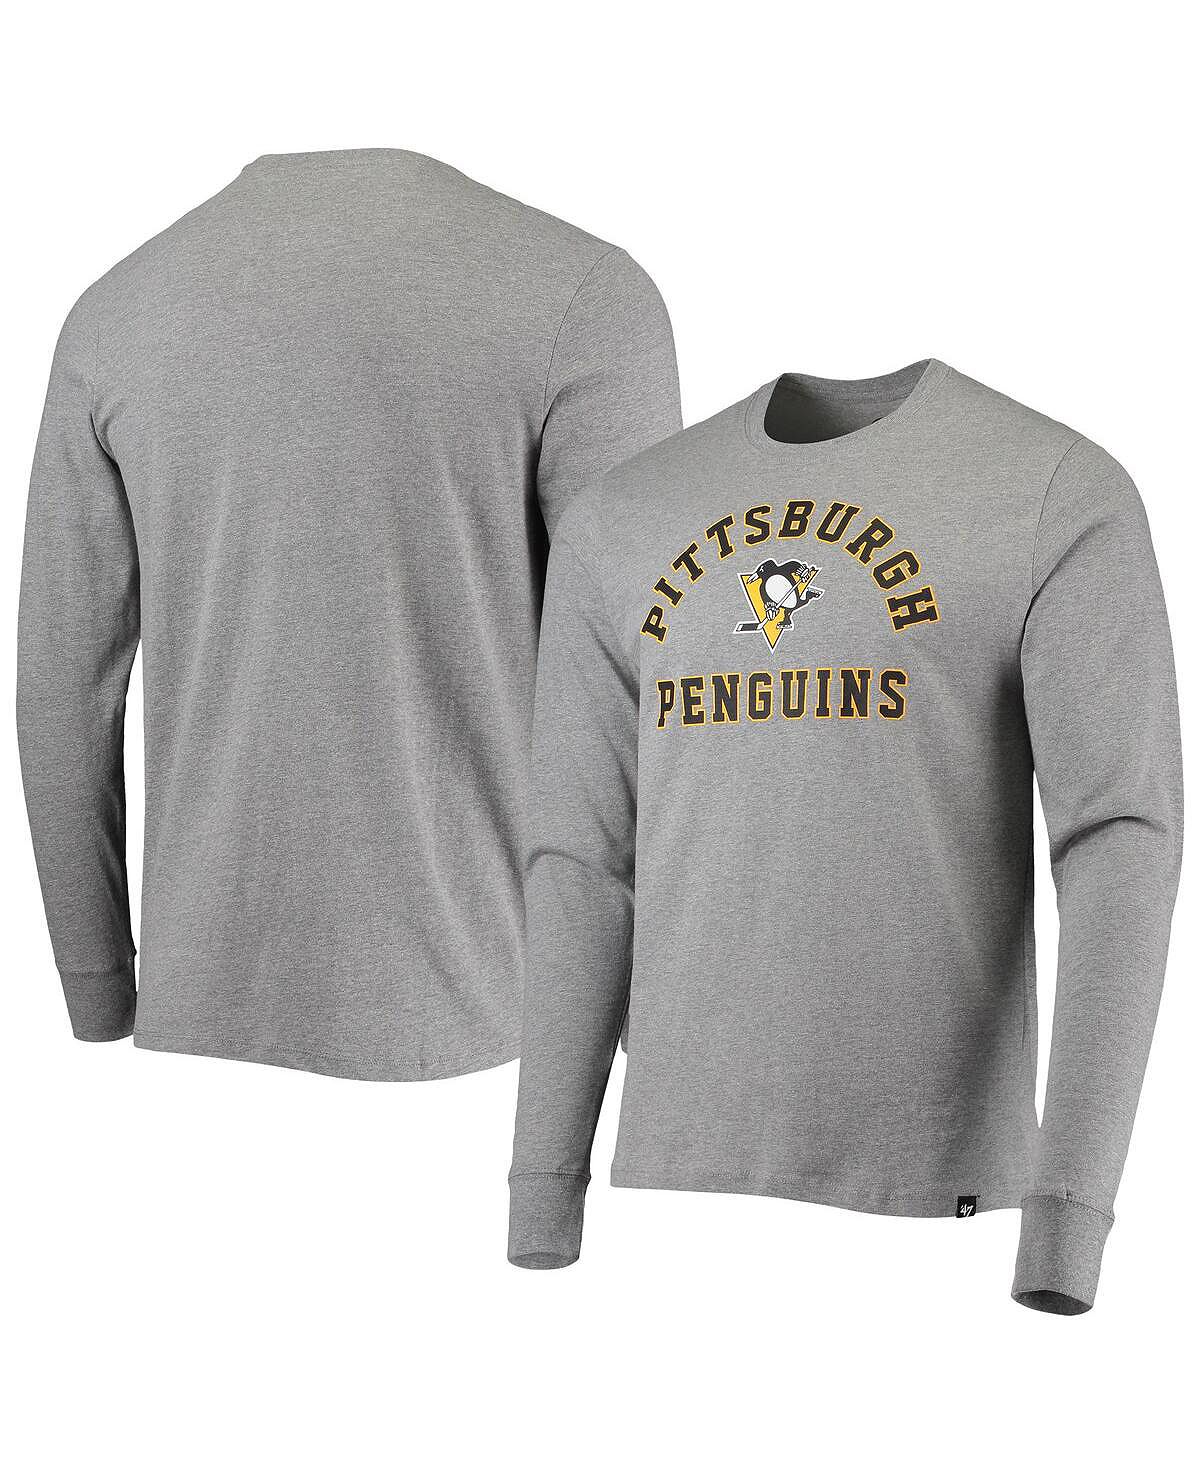 Мужская футболка с длинным рукавом '47 heathered grey pittsburgh penguins varsity arch super rival '47 Brand, мульти